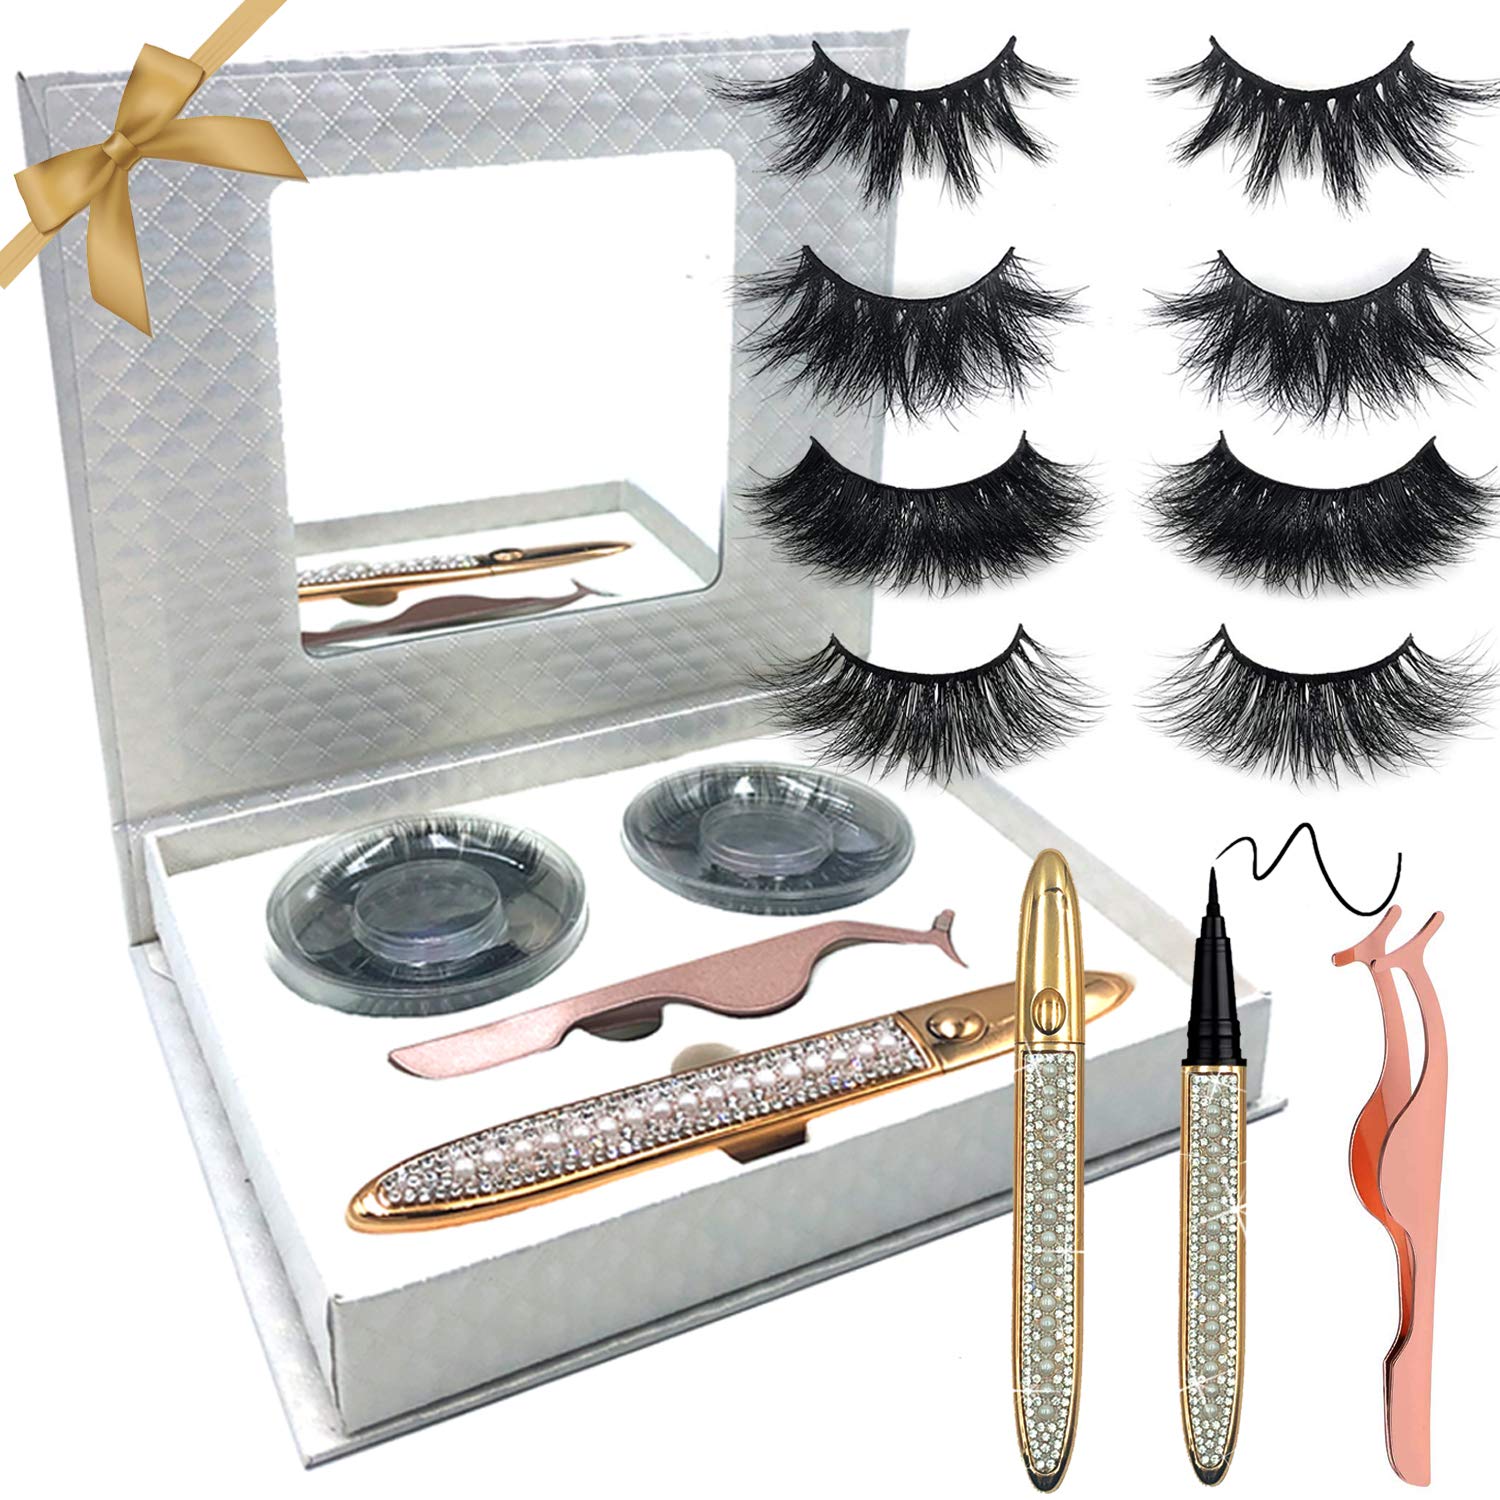 Eyelashes Eyeliner Kit,2020 Upgraded Self-Adhesive False Lashes 4 Pairs Long Dramatic Mink Lashes Wispy Lashes Self-adhesive Eyeliner-No Glue No Magnet Needed False Lashes Tweezers (Diamond Silver)